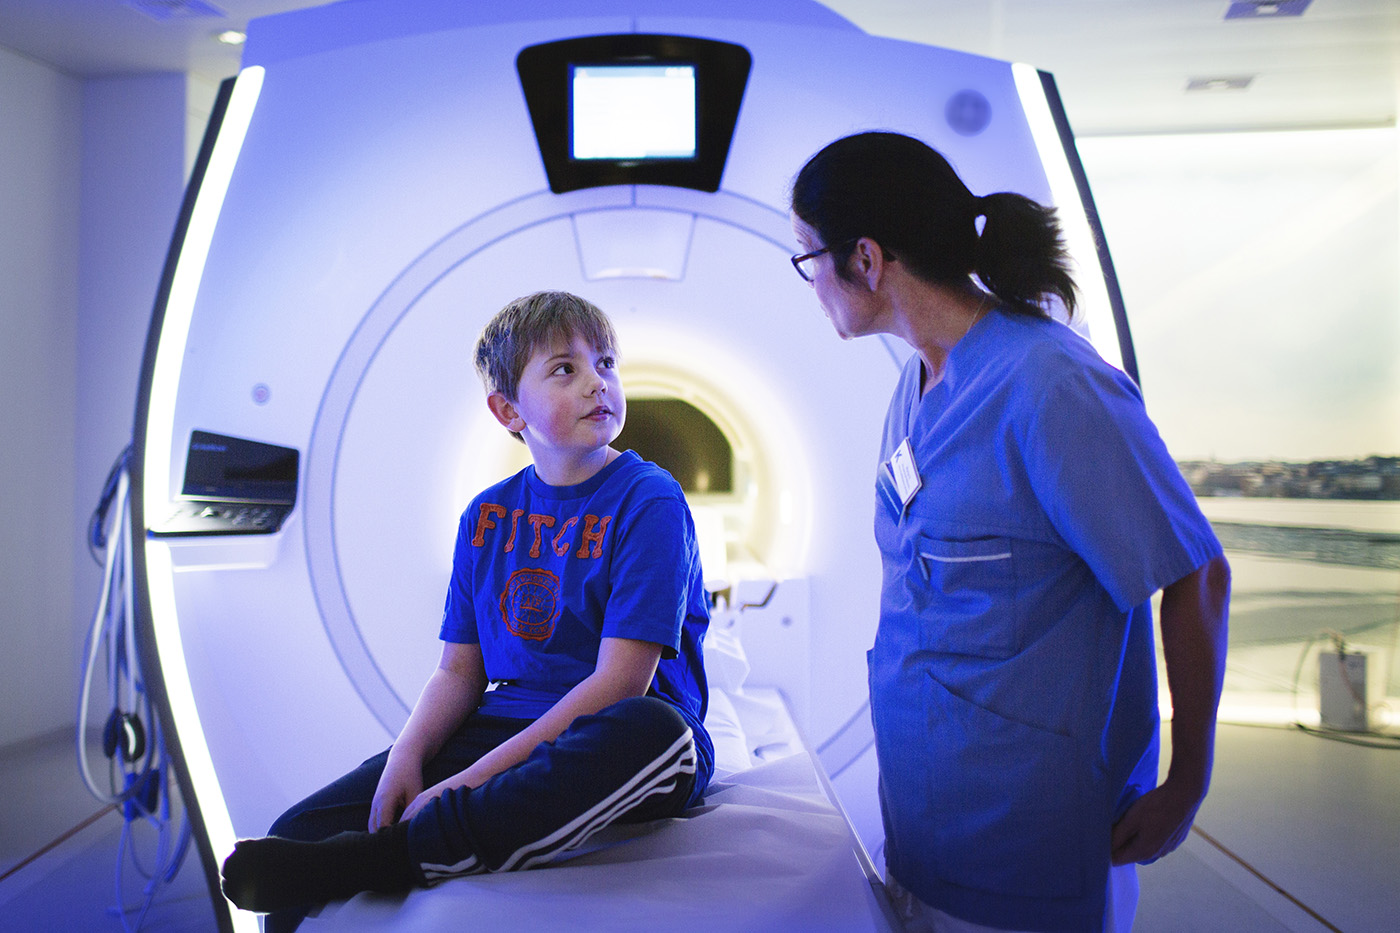 bilden visar en pojke som sitter framför en magnetröntgenkamera. Bredvid pojken står en kvinna i sjukvårdsklädsel. Hon har glasögon och tittar på pojken.